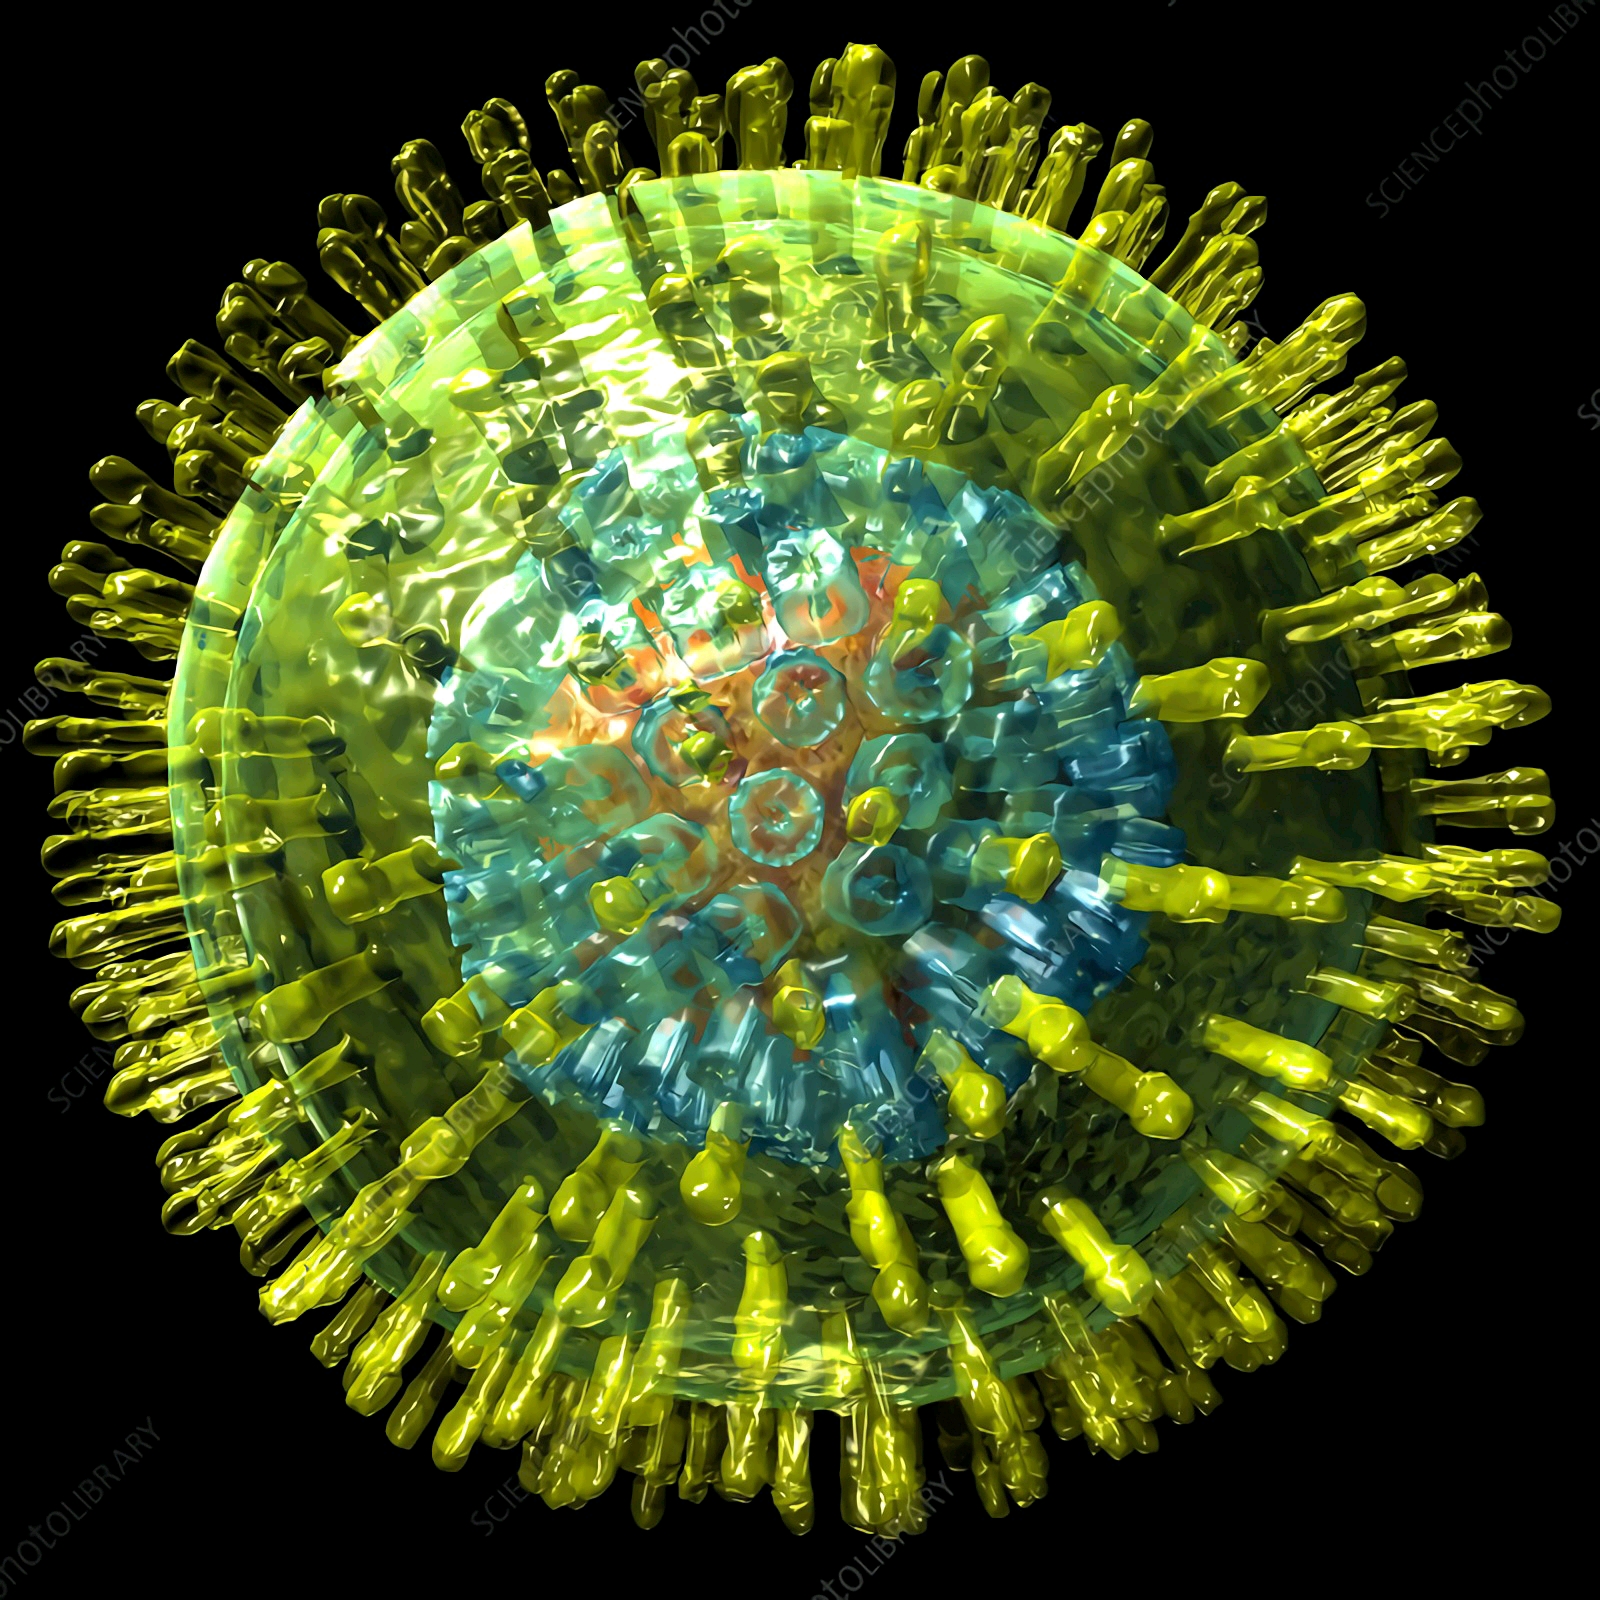 疱疹病毒的代表——单纯疱疹病毒(HSV-1/2、HHV-1/2) - 哔哩哔哩